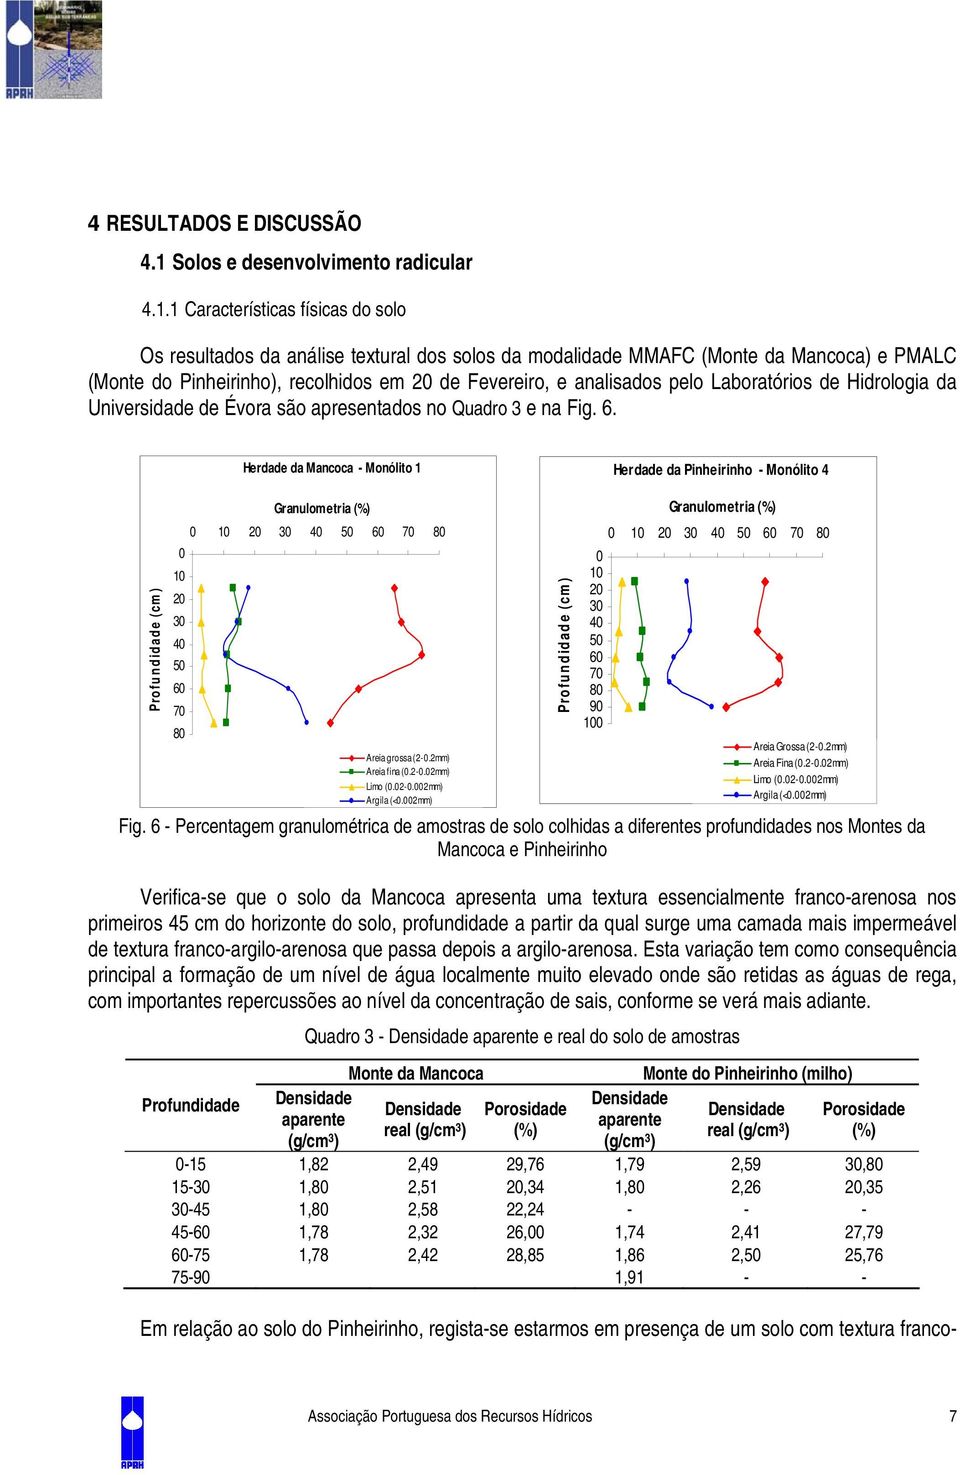 1 Características físicas do solo Os resultados da análise textural dos solos da modalidade MMAFC (Monte da Mancoca) e PMALC (Monte do Pinheirinho), recolhidos em 2 de Fevereiro, e analisados pelo